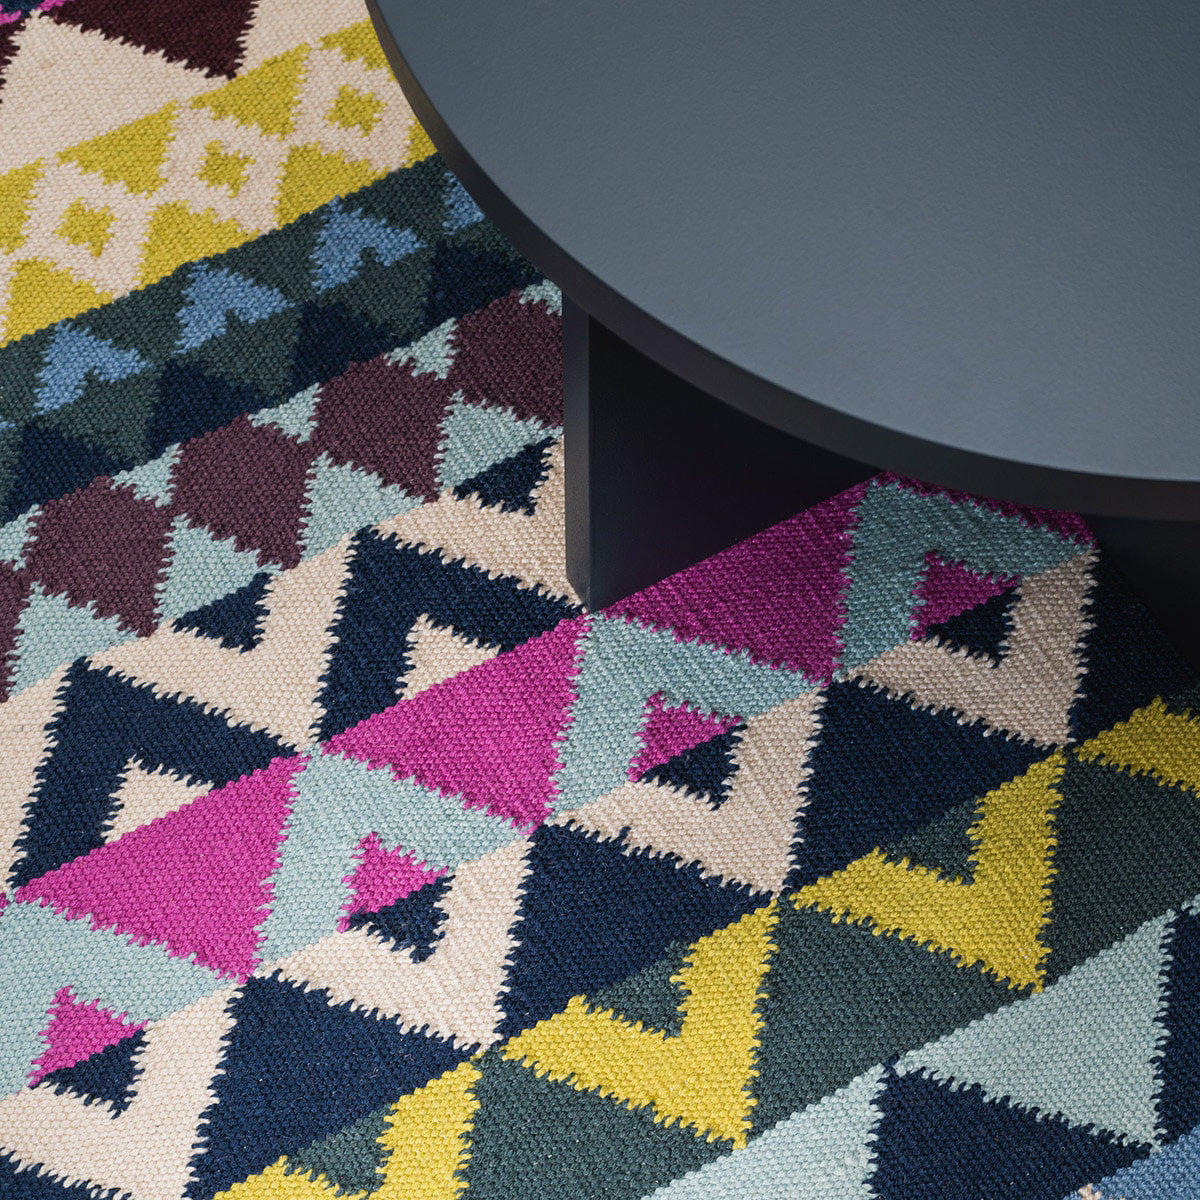 Geometric pattern, colourful rugs, designer rugs, luxury rugs, wool rugs, geometric rug, modern rug, yellow rug, pink rug, blue rug, purple rug